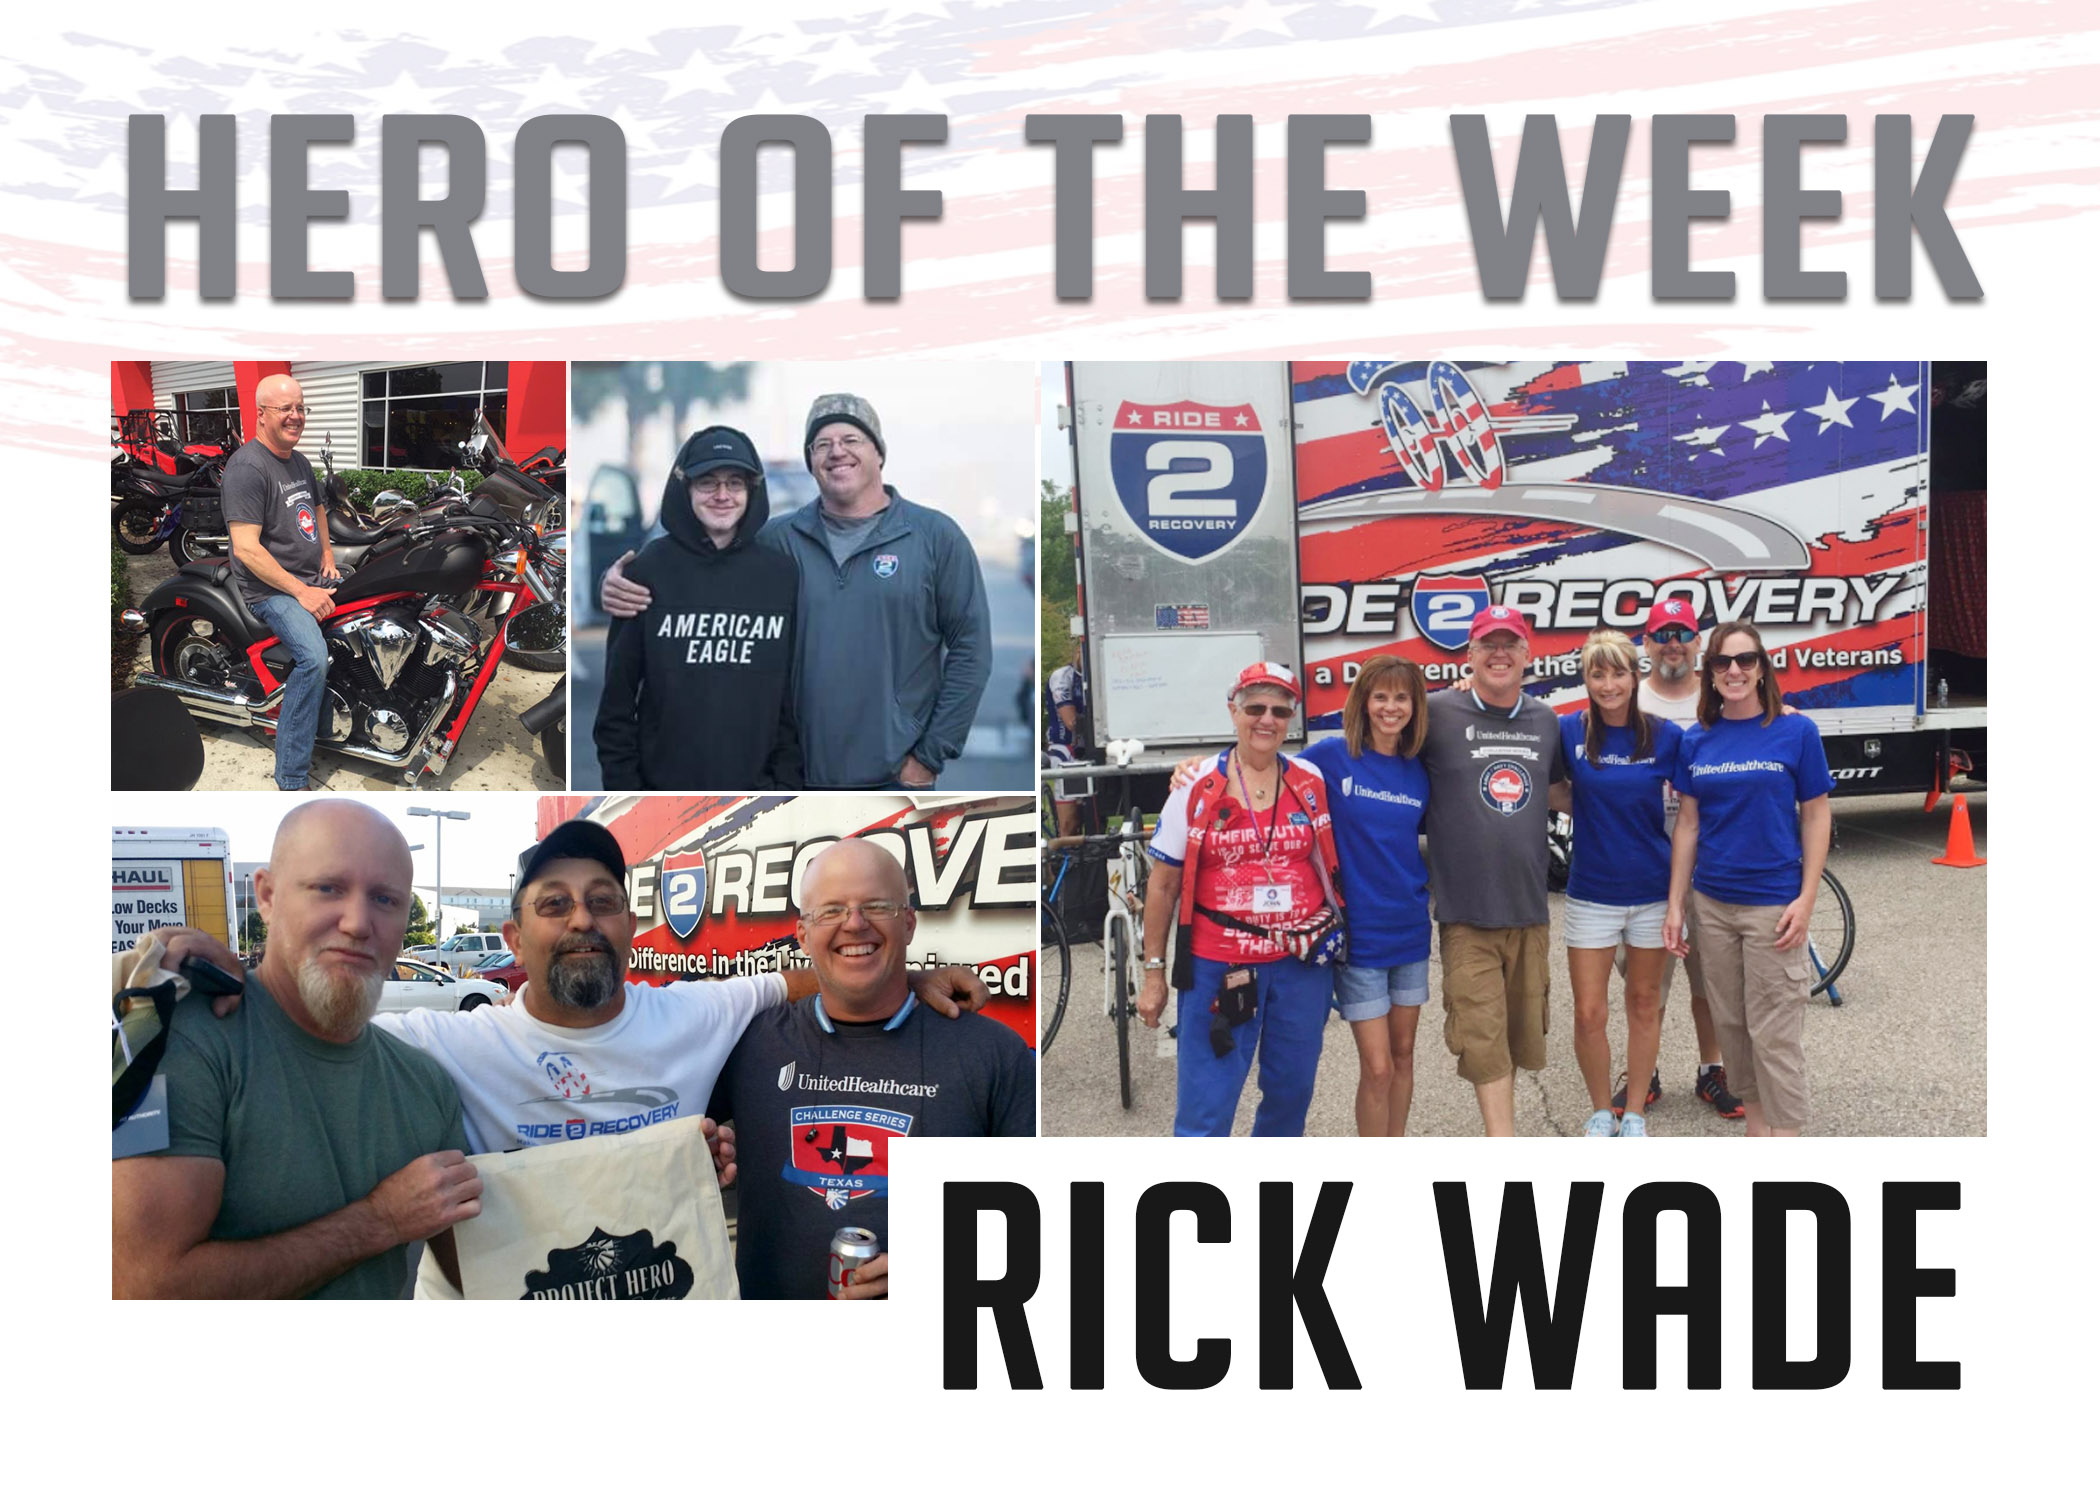 Hero of the Week: Rick Wade 